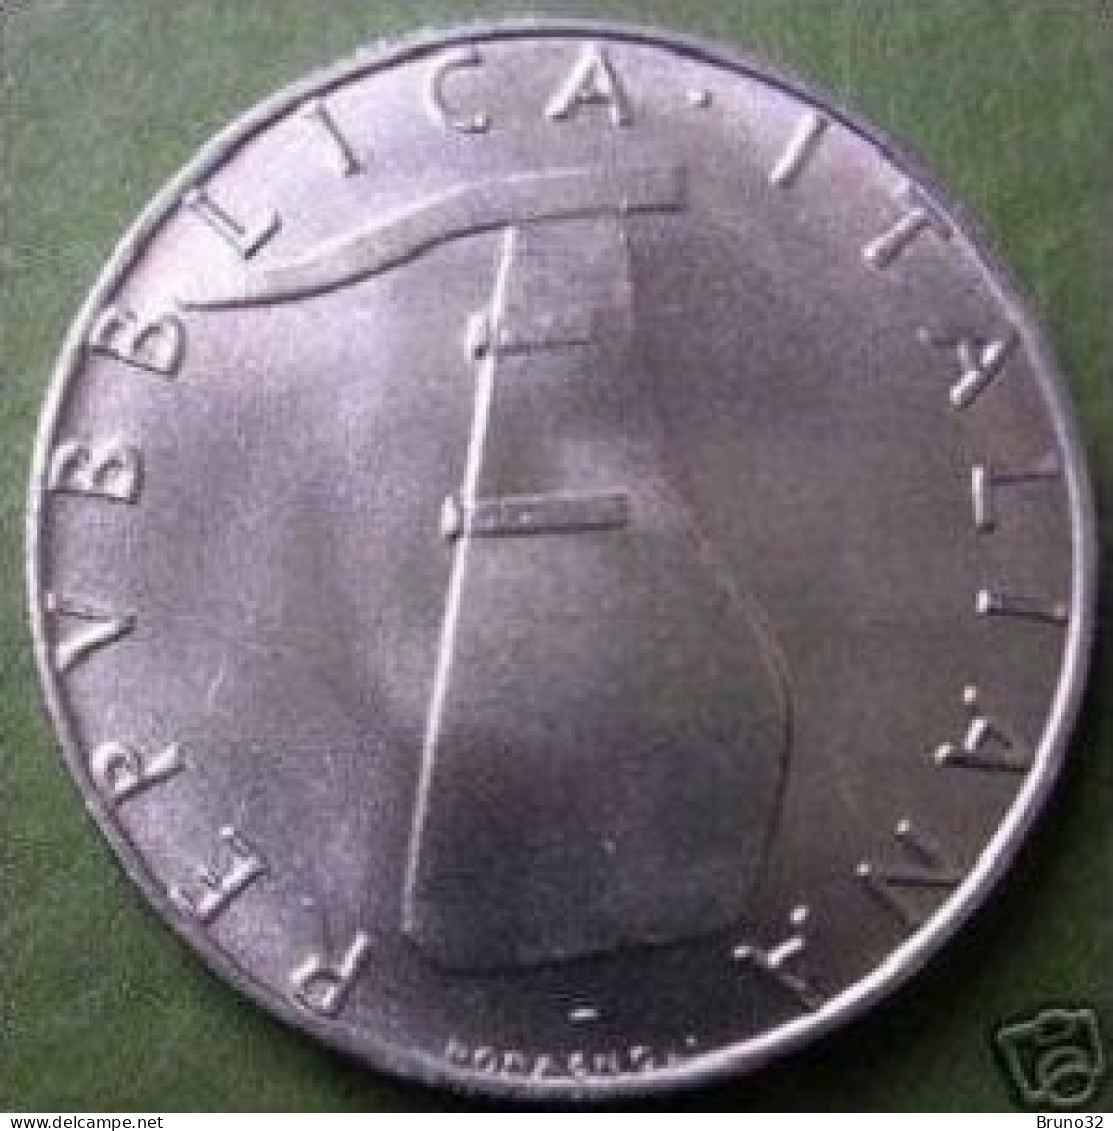 ITALIA - Lire 5 1969 - FDC/Unc Da Rotolino/from Roll 1 Moneta/1 Coin - 5 Liras